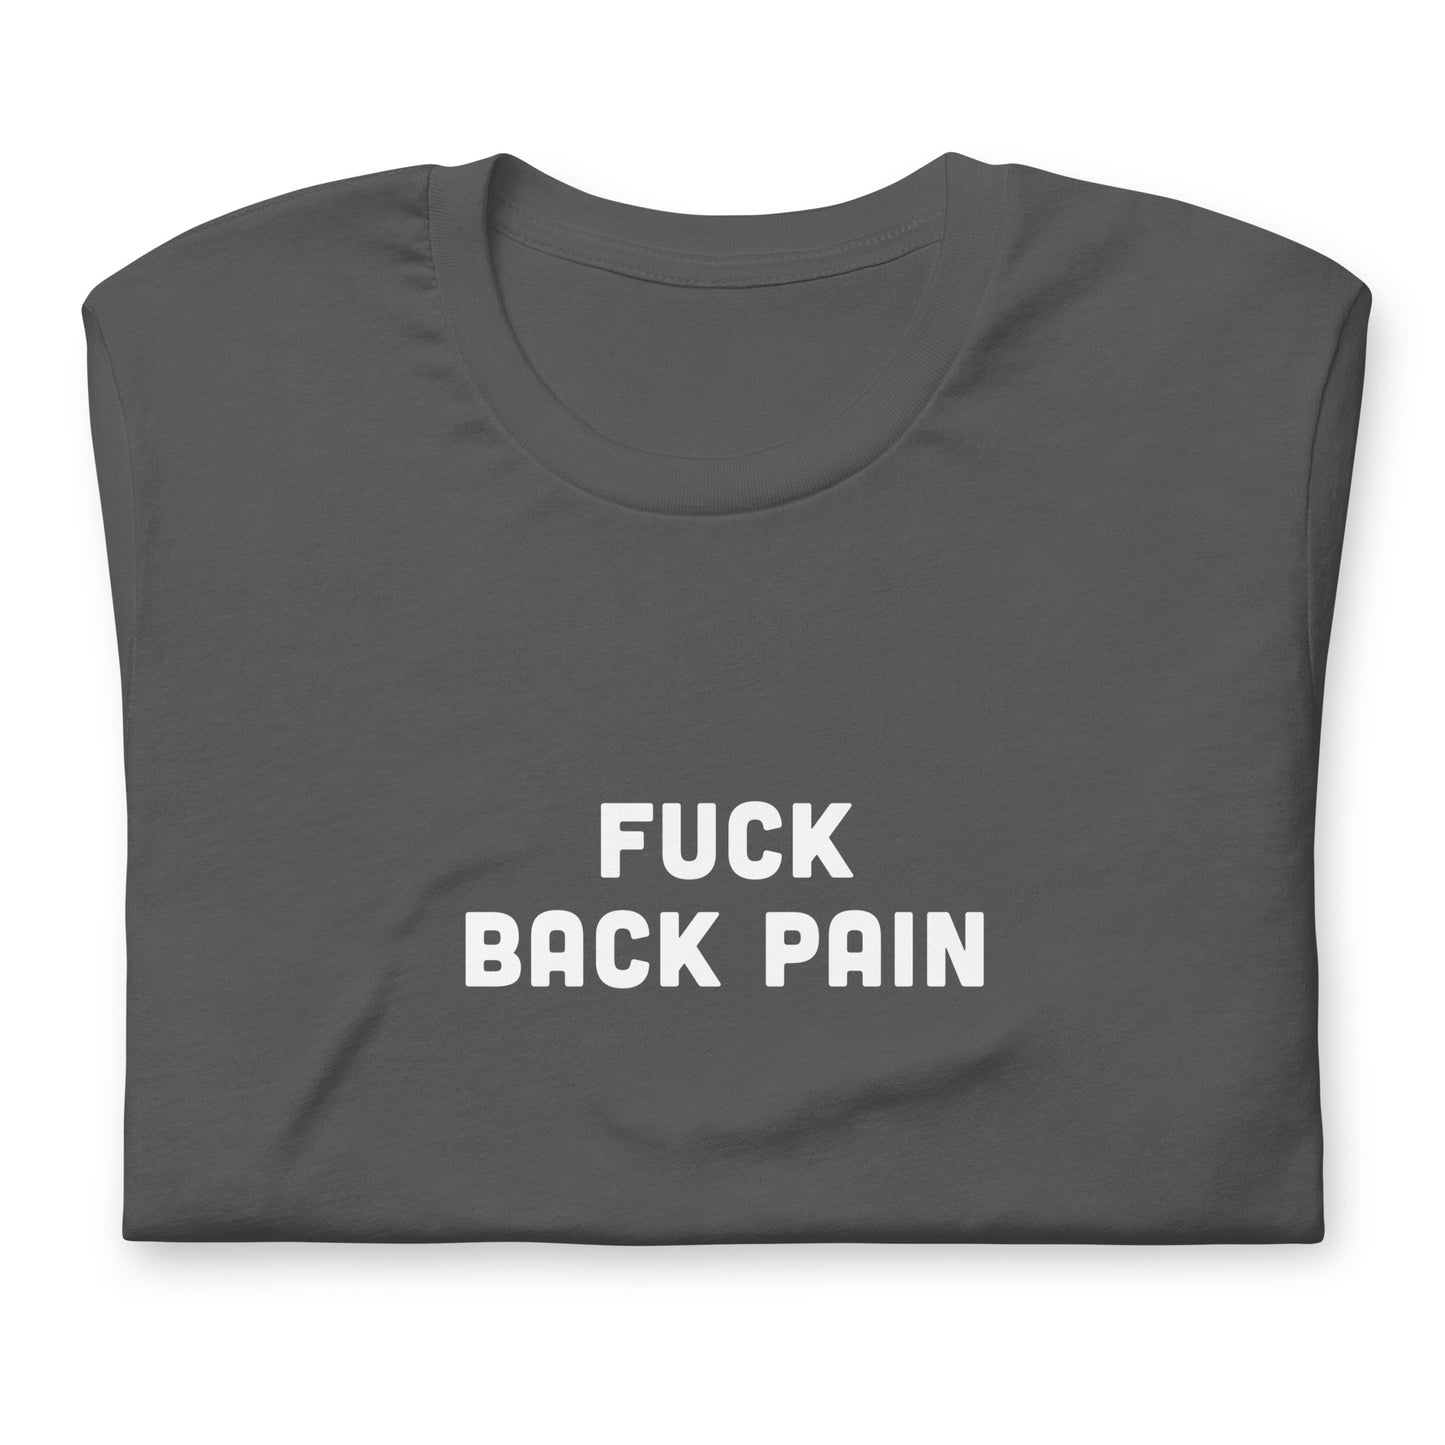 Fuck Back Pain T-Shirt Size 2XL Color Black